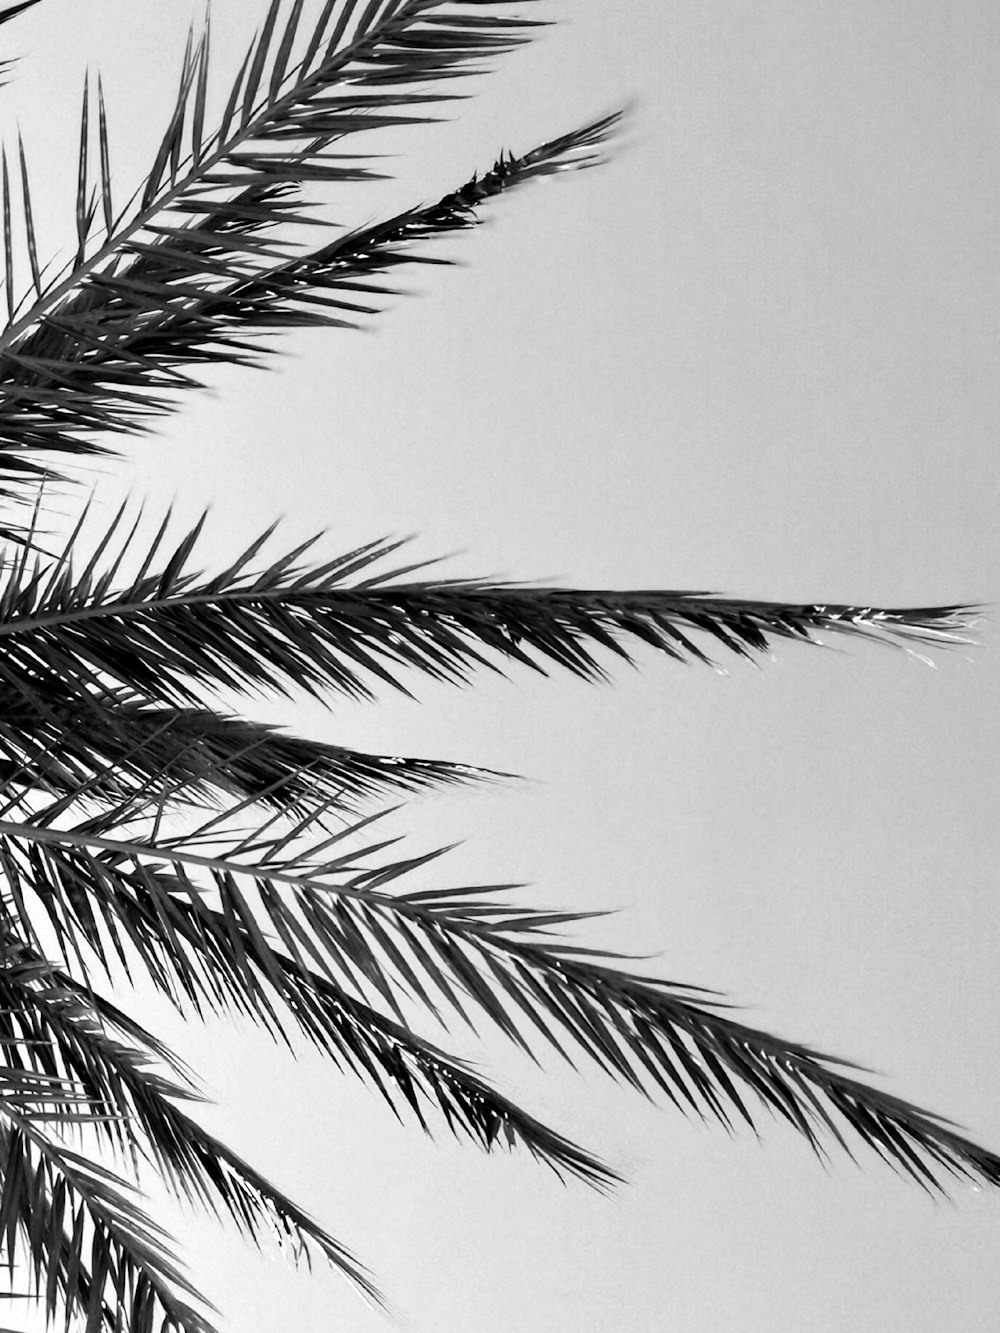 fotografia in scala di grigi della palma da cocco